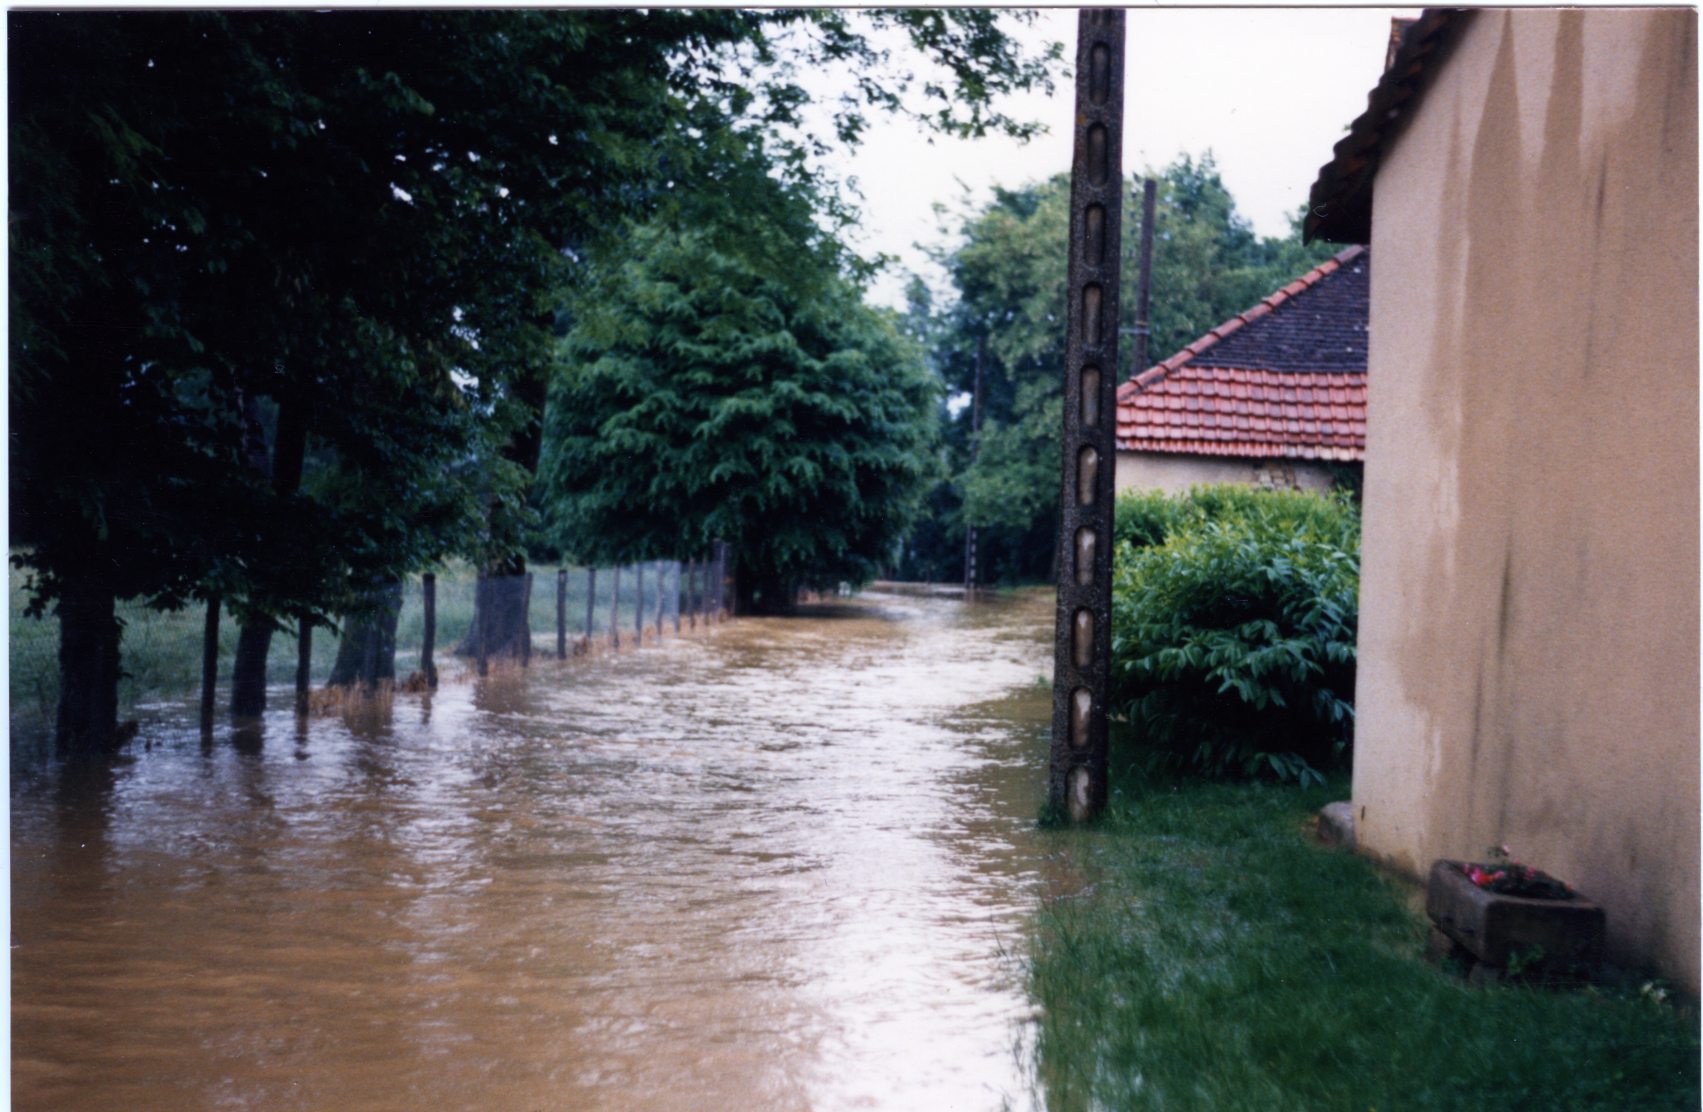 Crue de la Seille en 1988 à Ruffey-sur-Seille